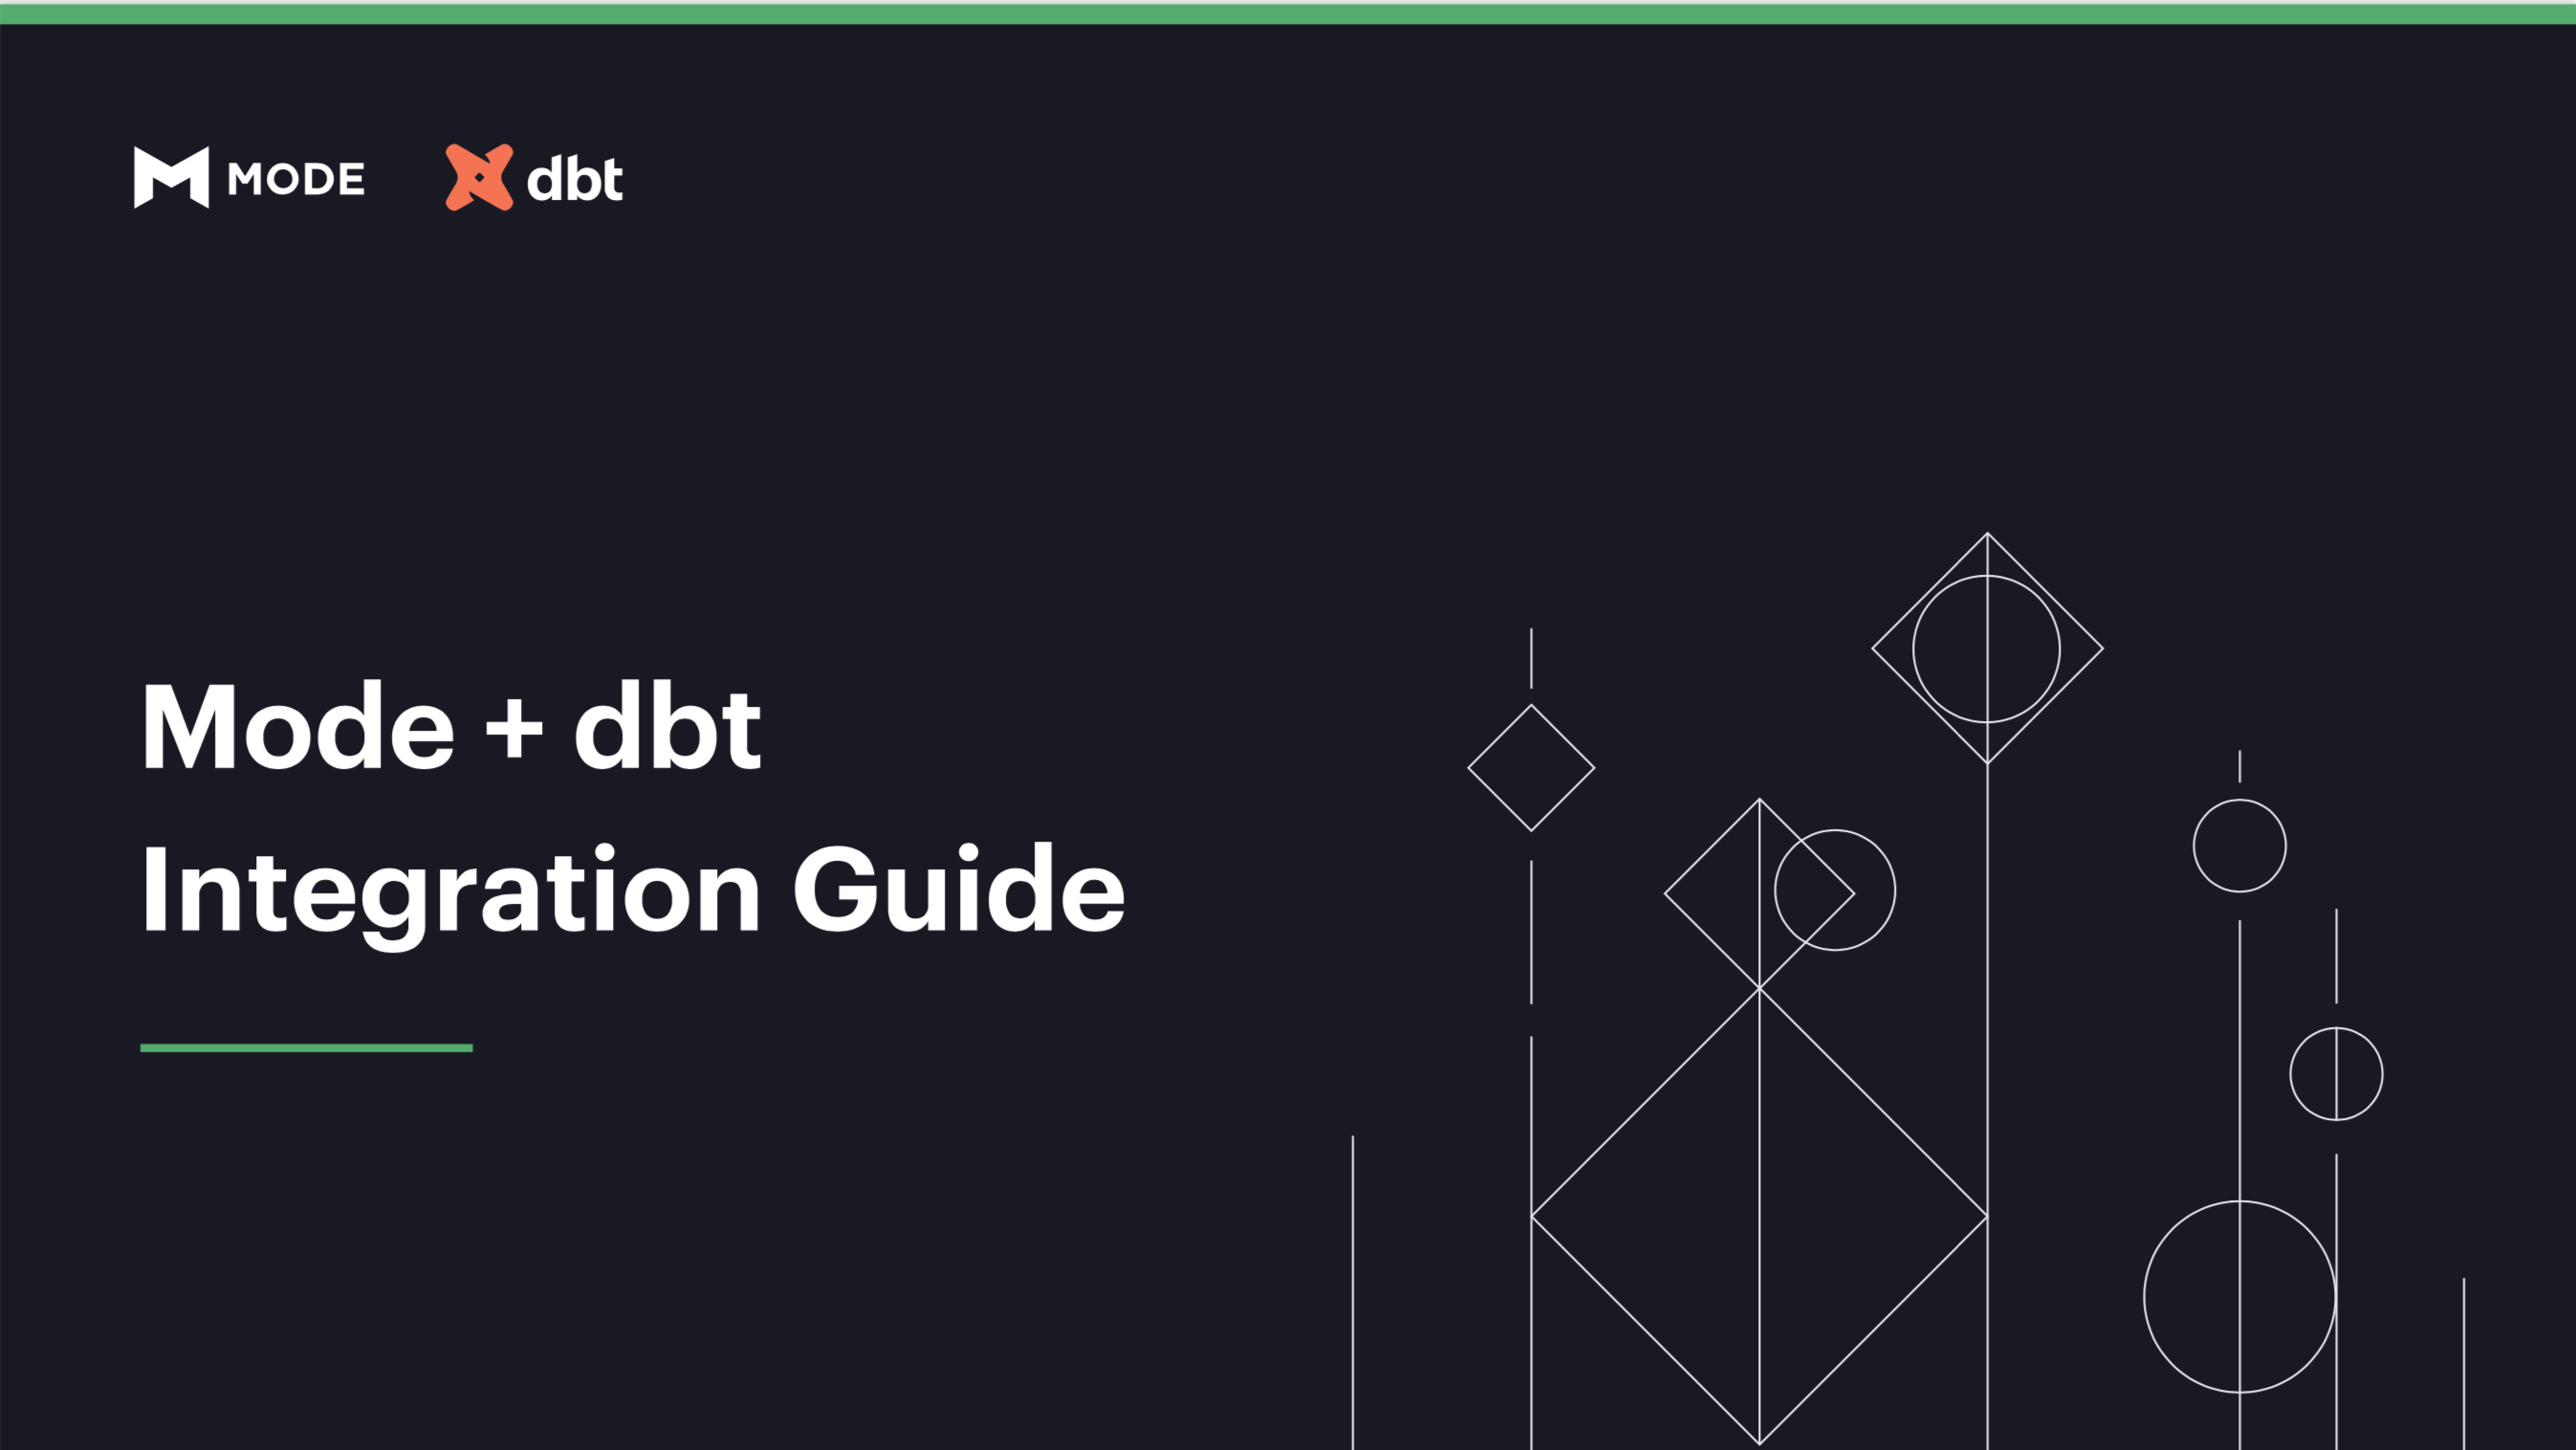 Mode + dbt integration guide